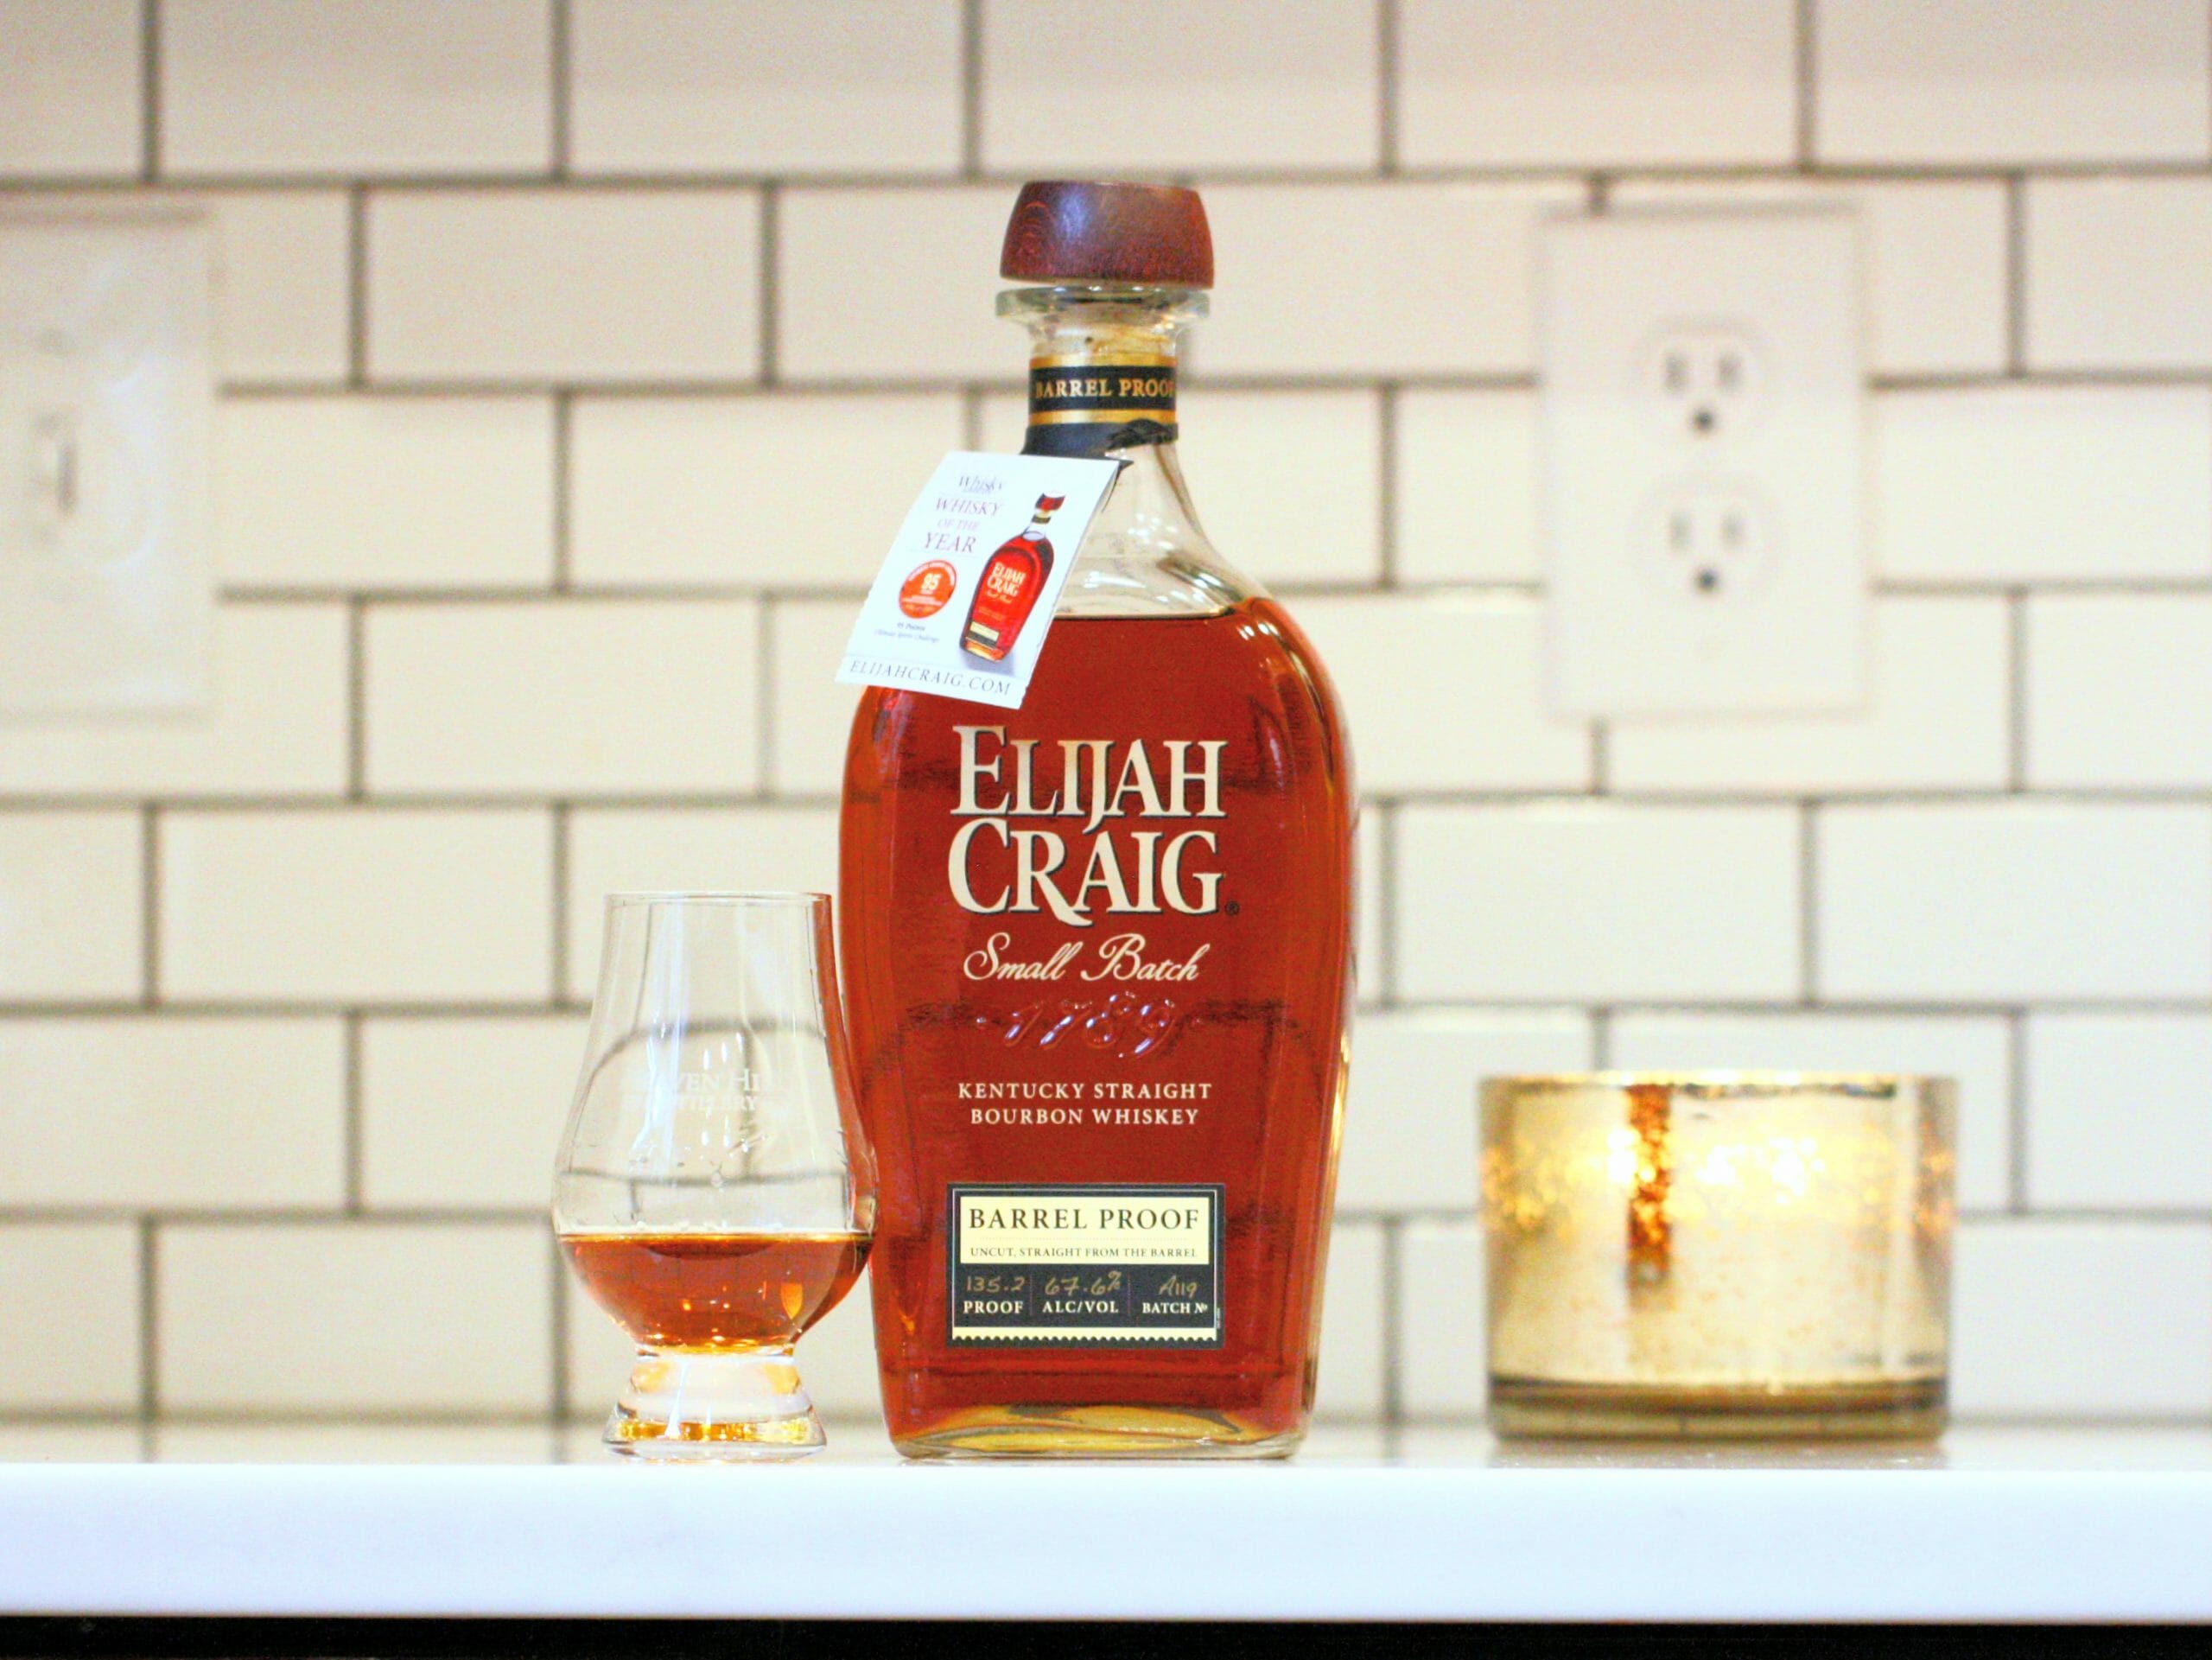 Elijah Craig Barrel Proof Bourbon Review: Batch A119